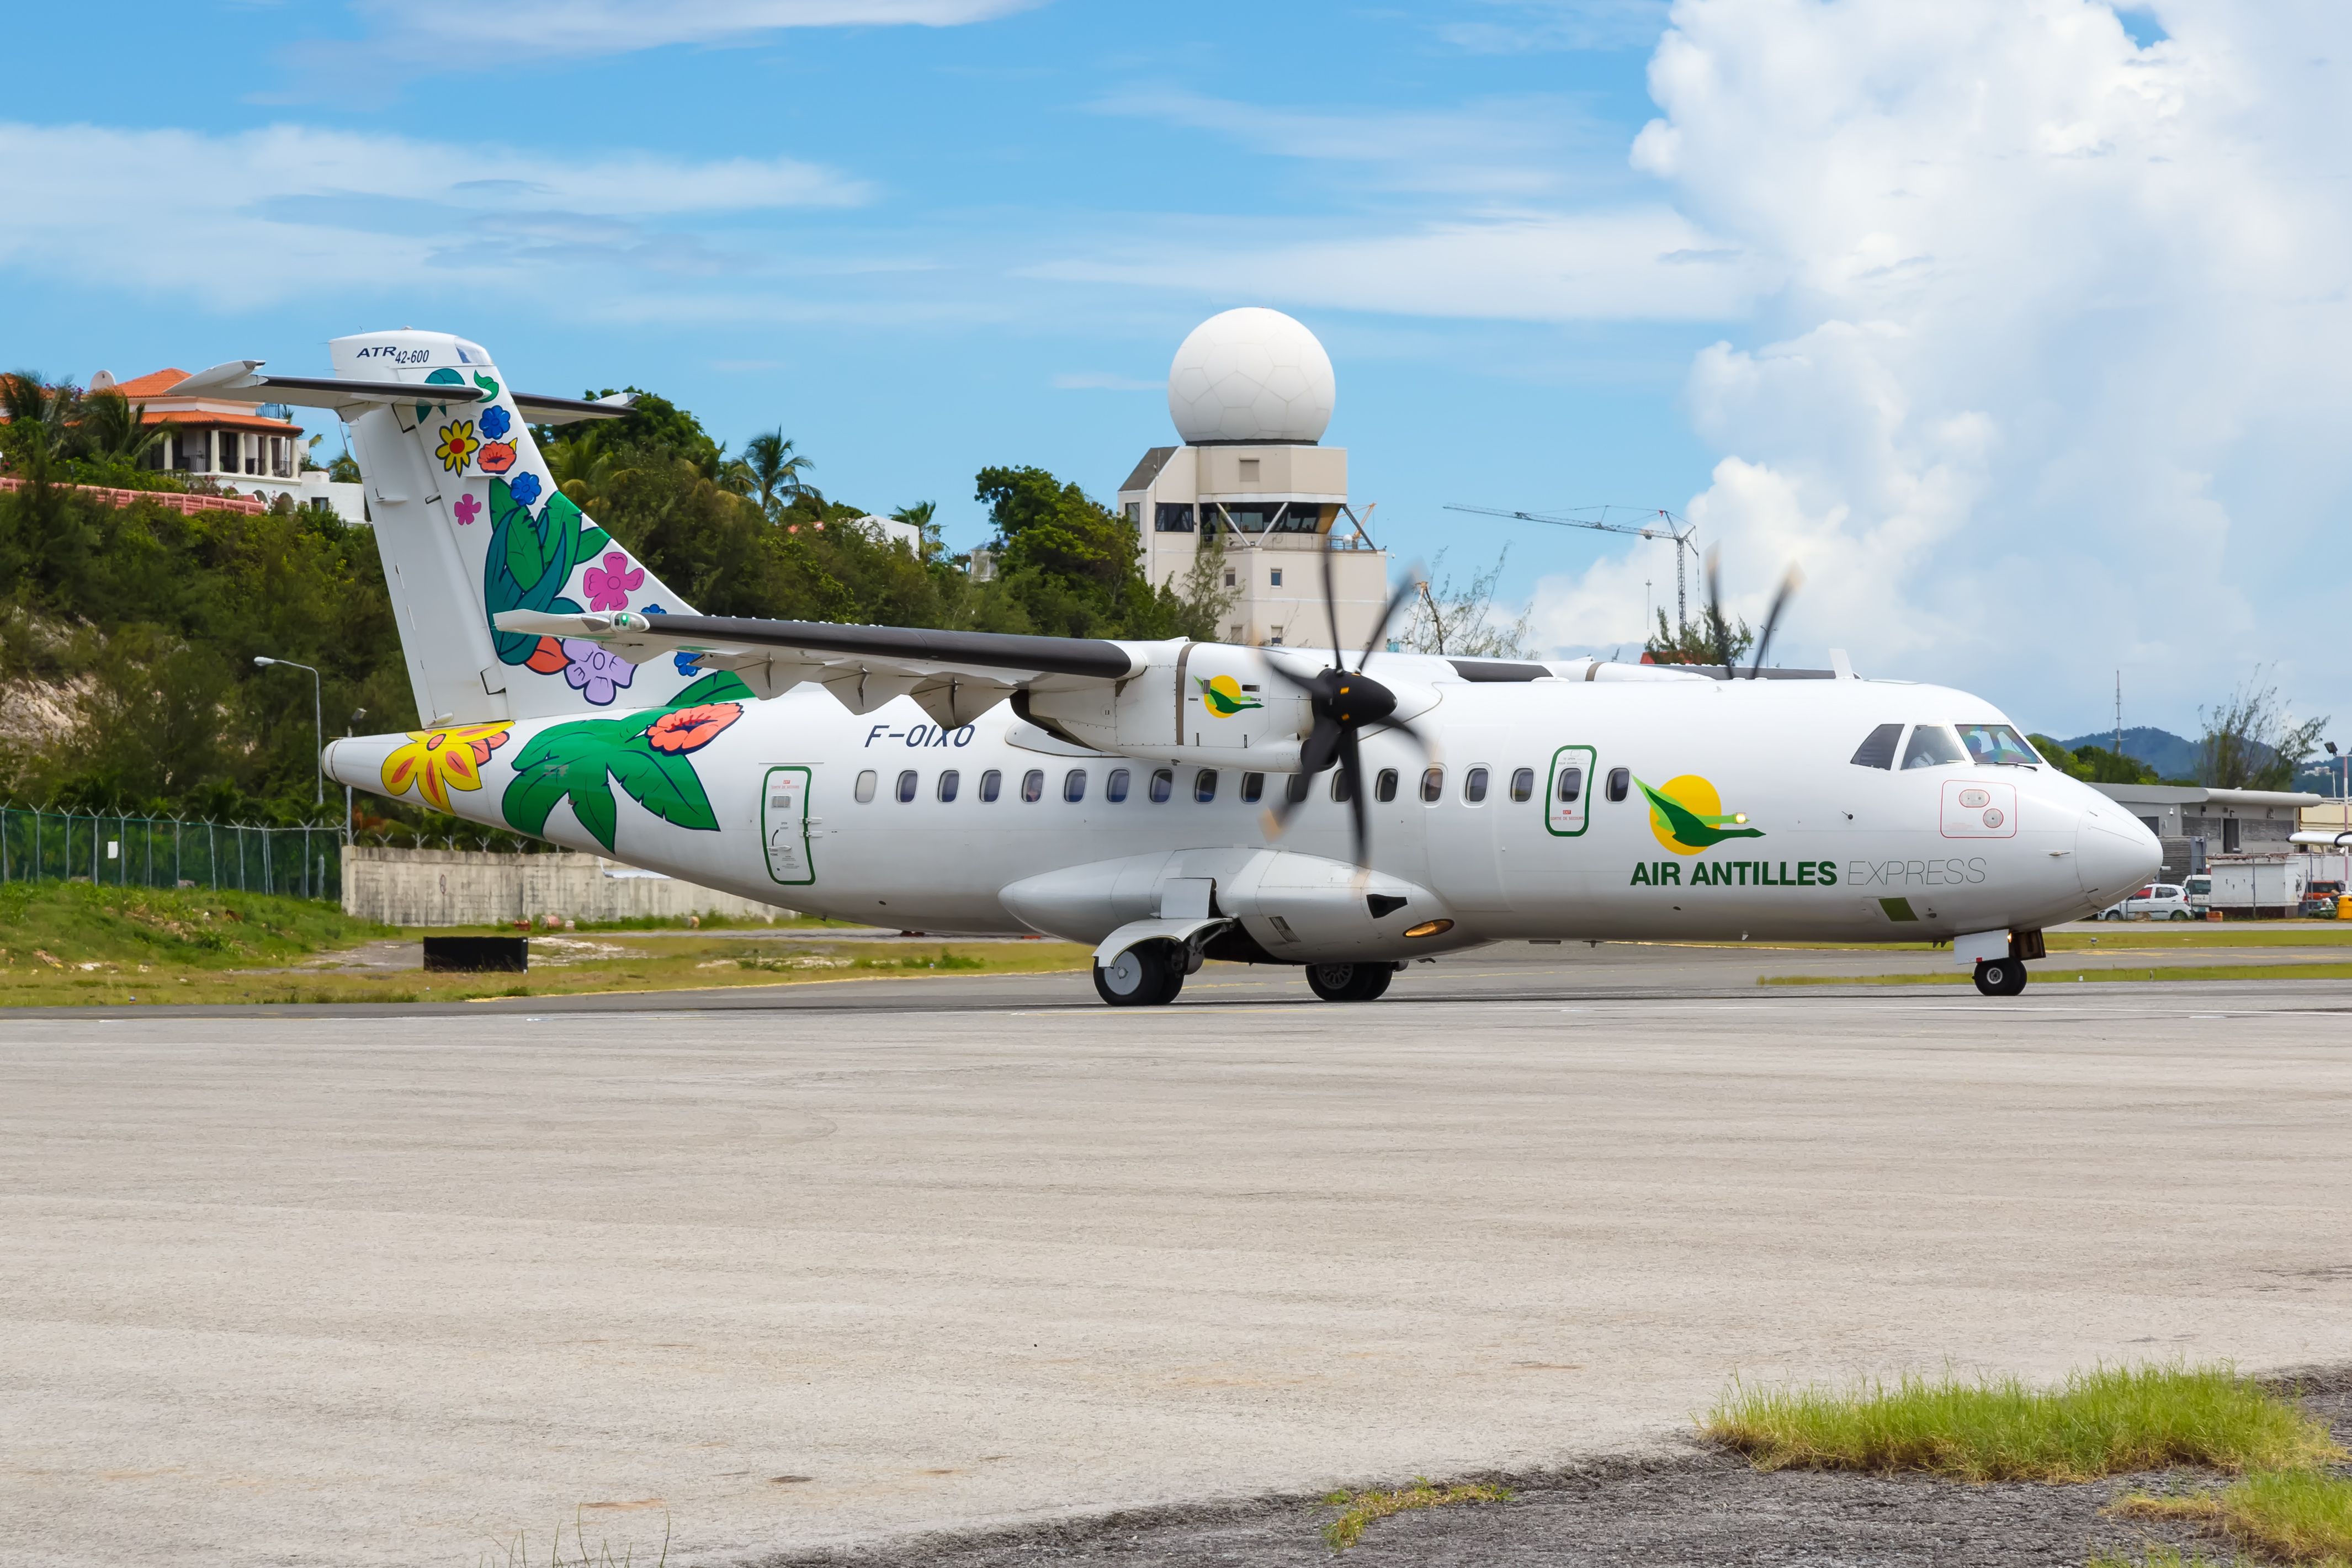 Air Antilles Express ATR 42-600 airplane at Sint Maarten's Princess Juliana International Airport